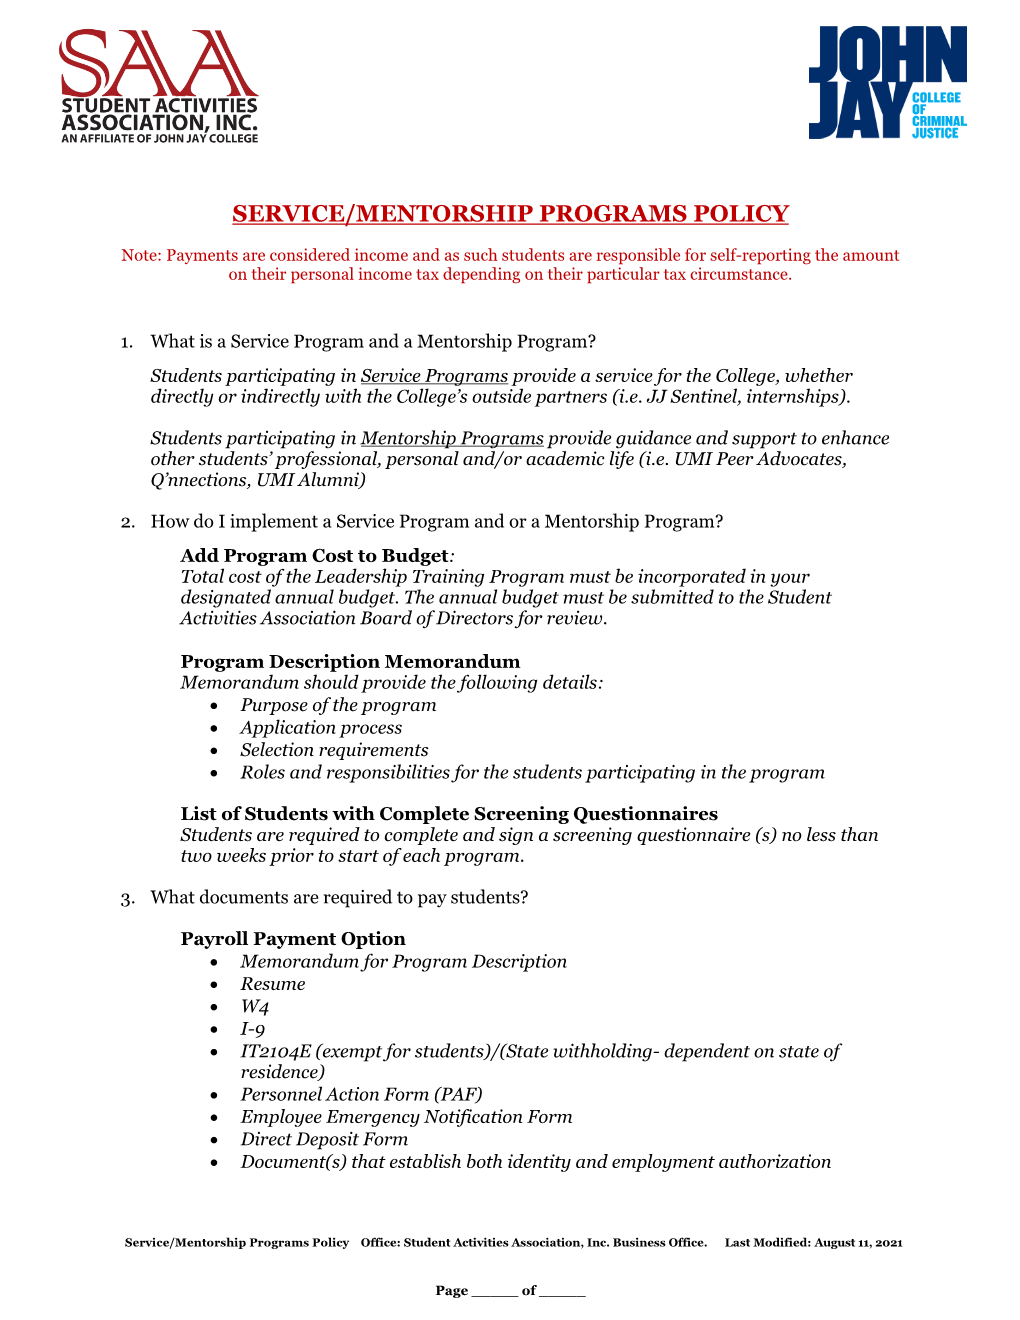 Service/Mentorship Programs Policy